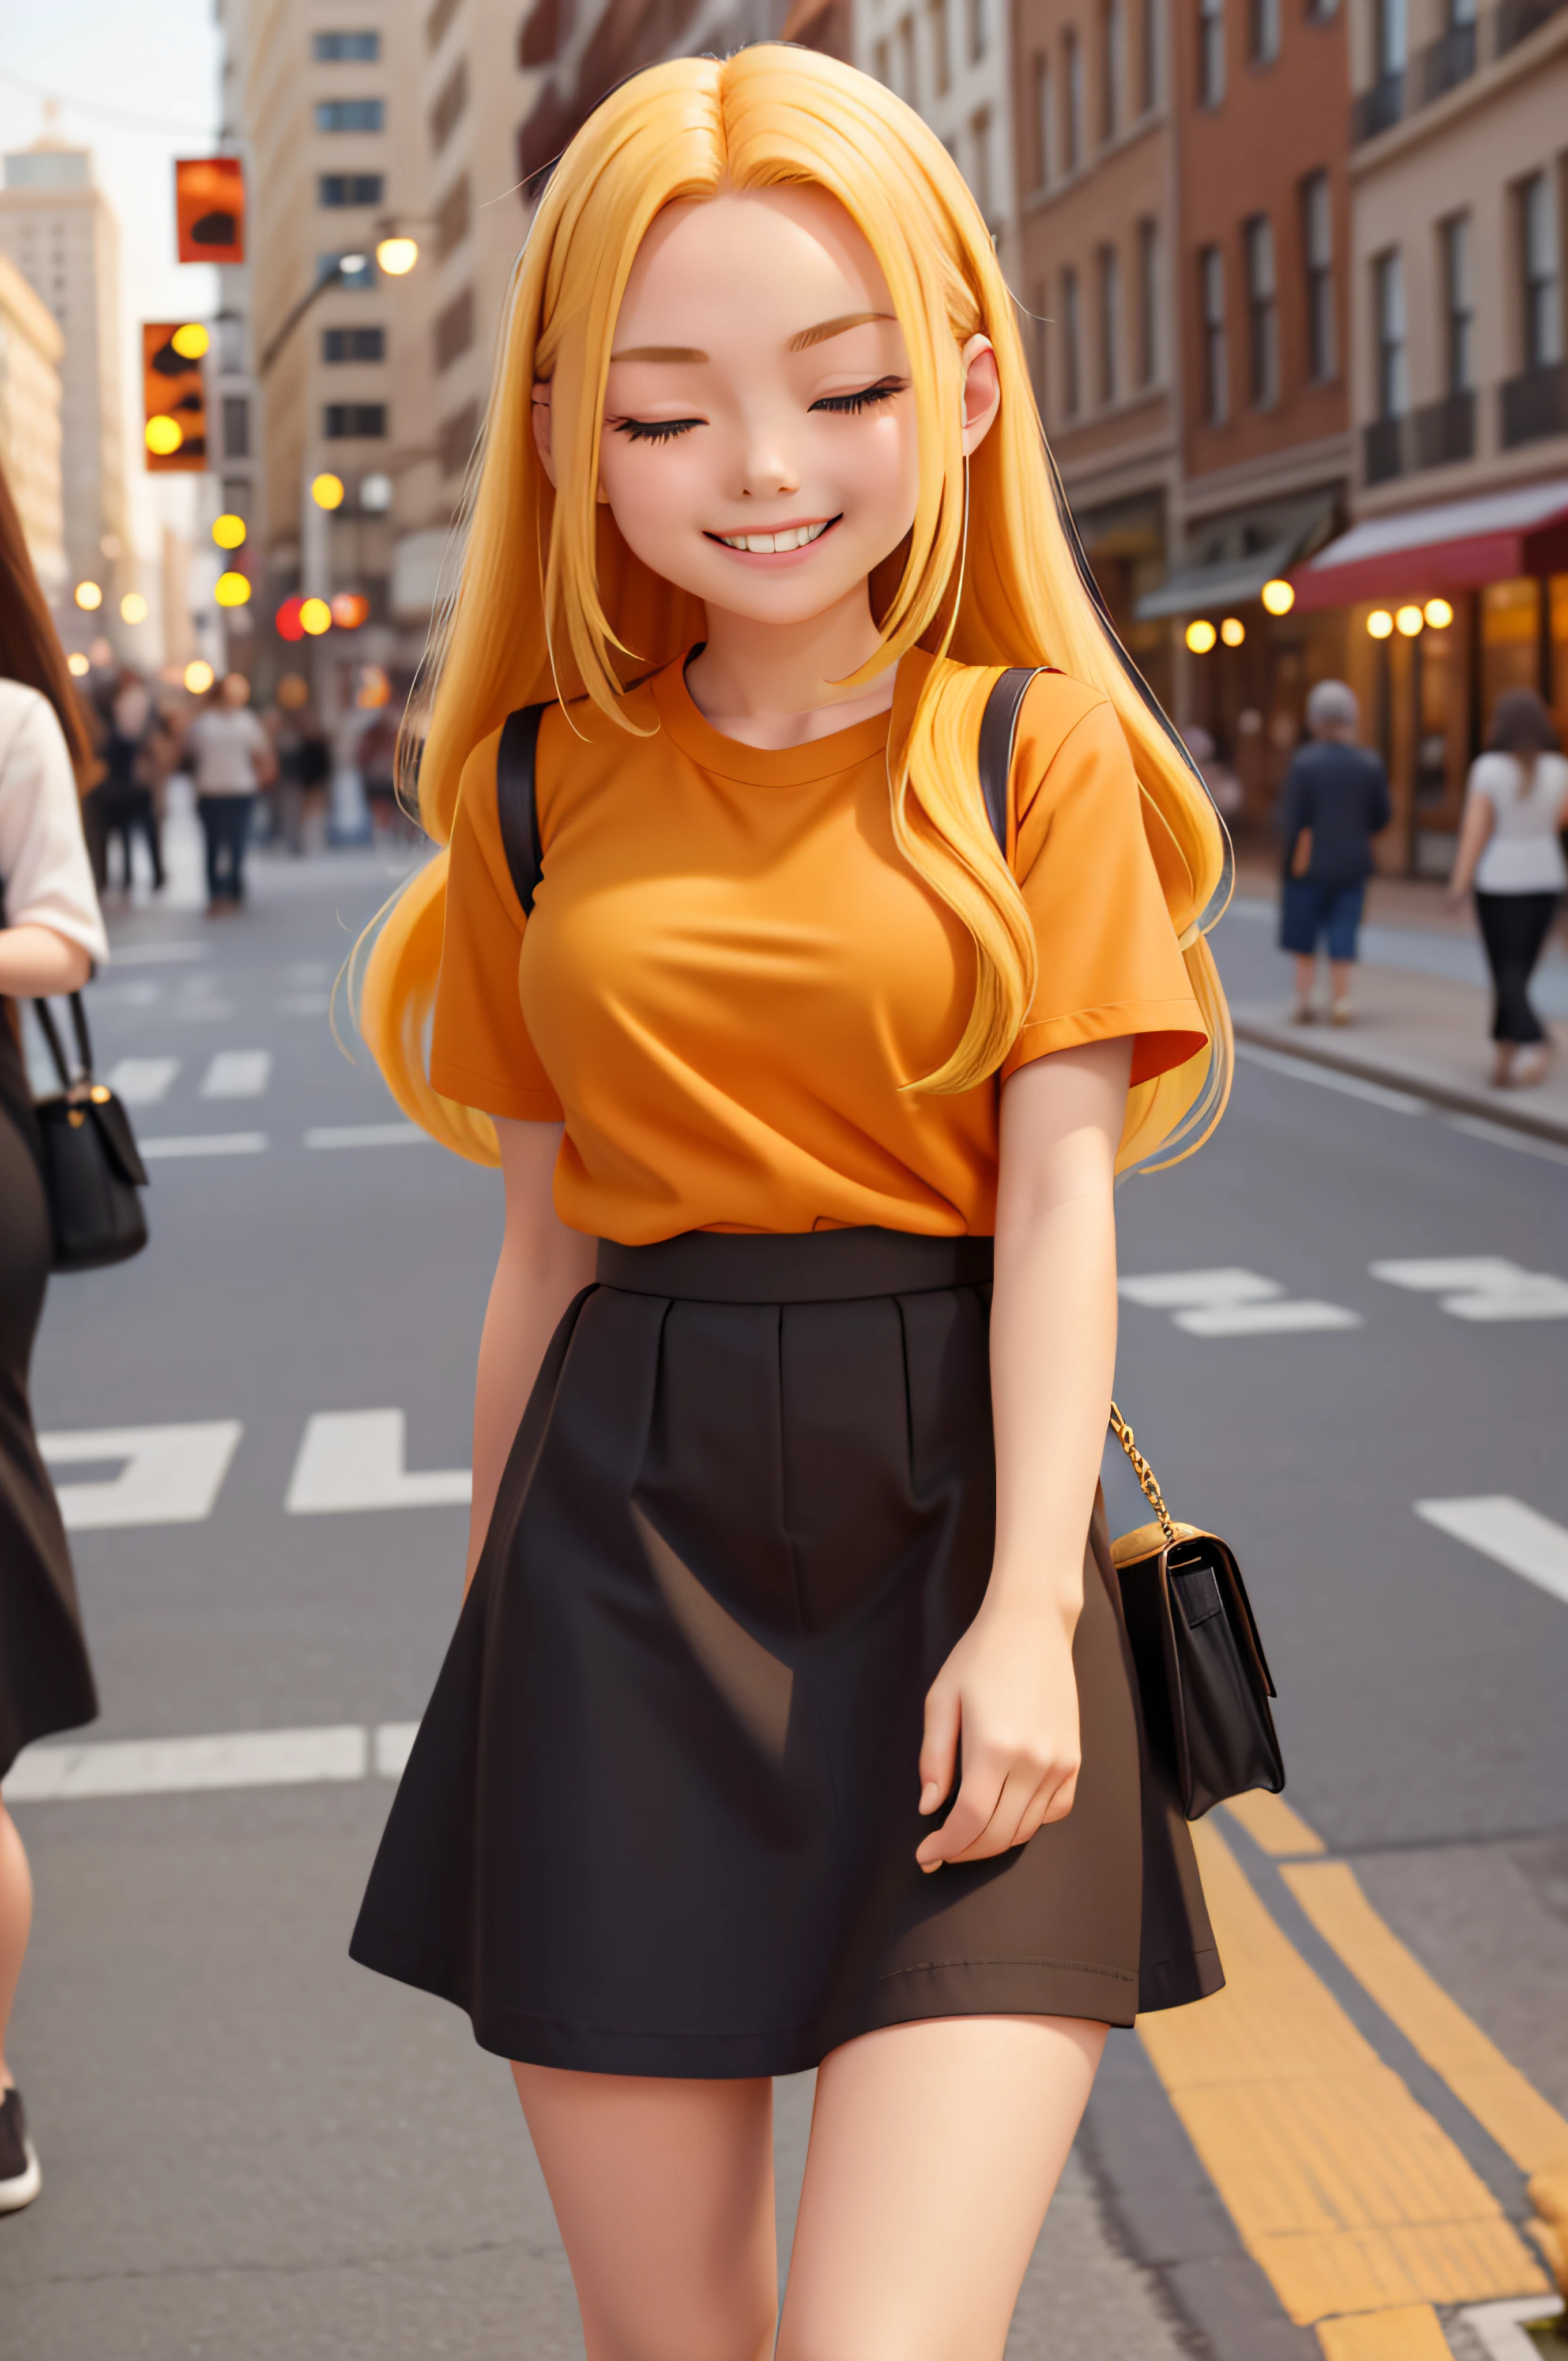 1 girl, 18 years old, long yellow hair, smiling, eyes closed, city, black skirt, orange shirt